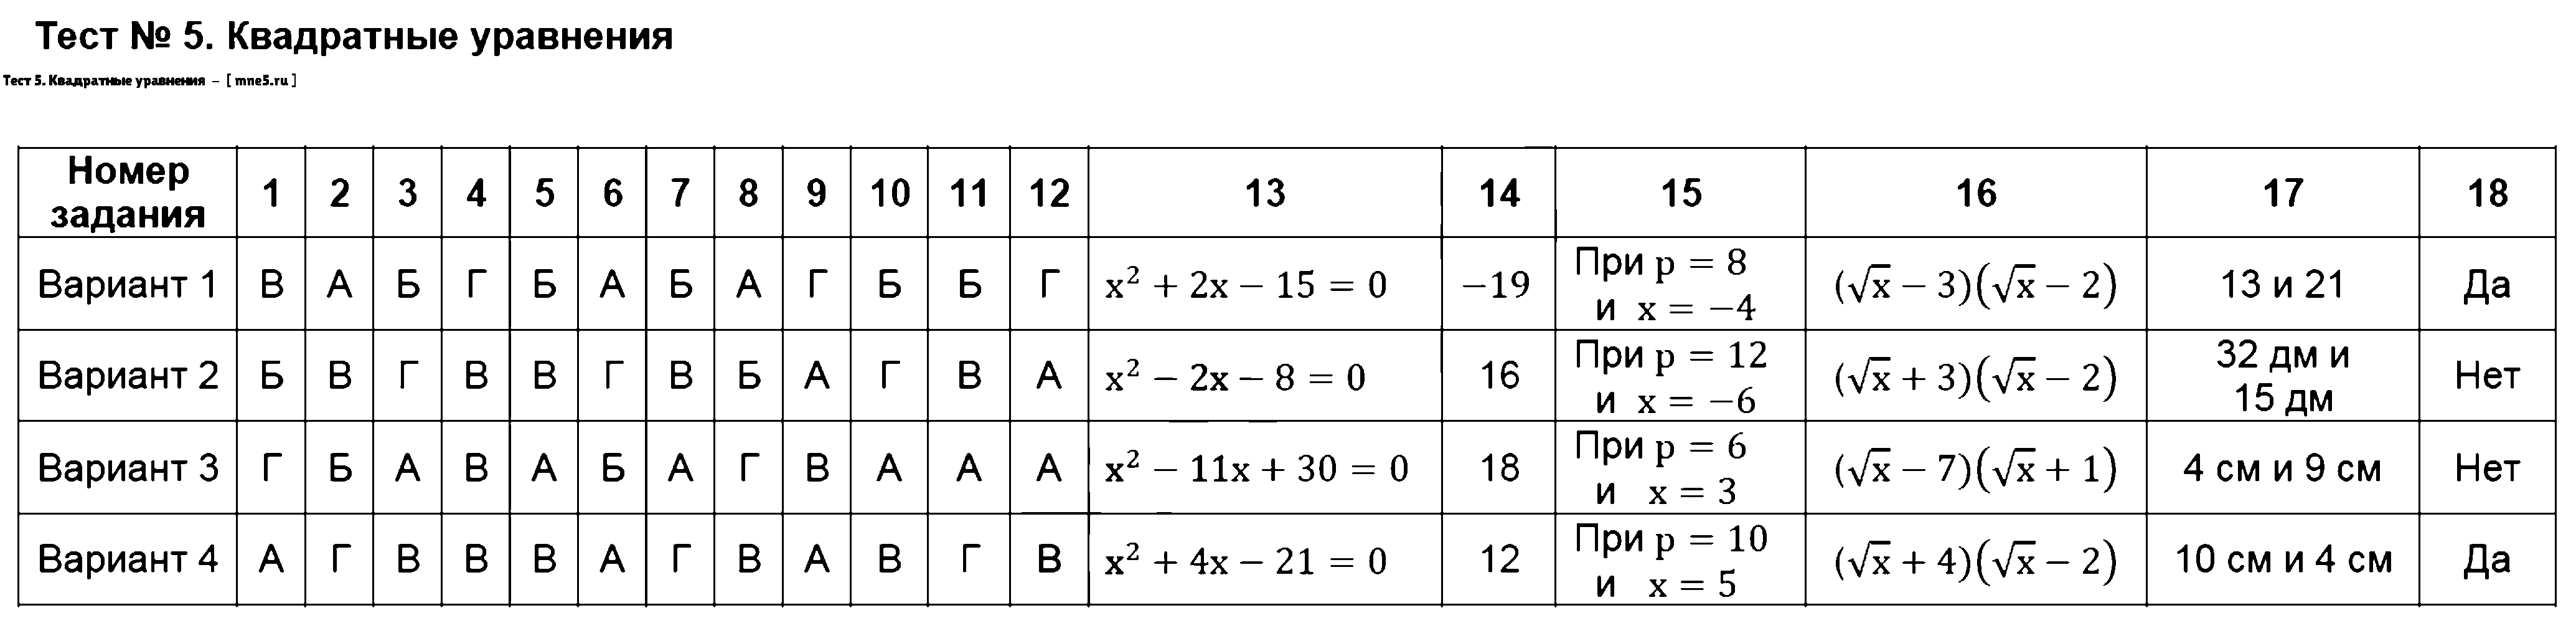 ГДЗ Алгебра 8 класс - Тест 5. Квадратные уравнения